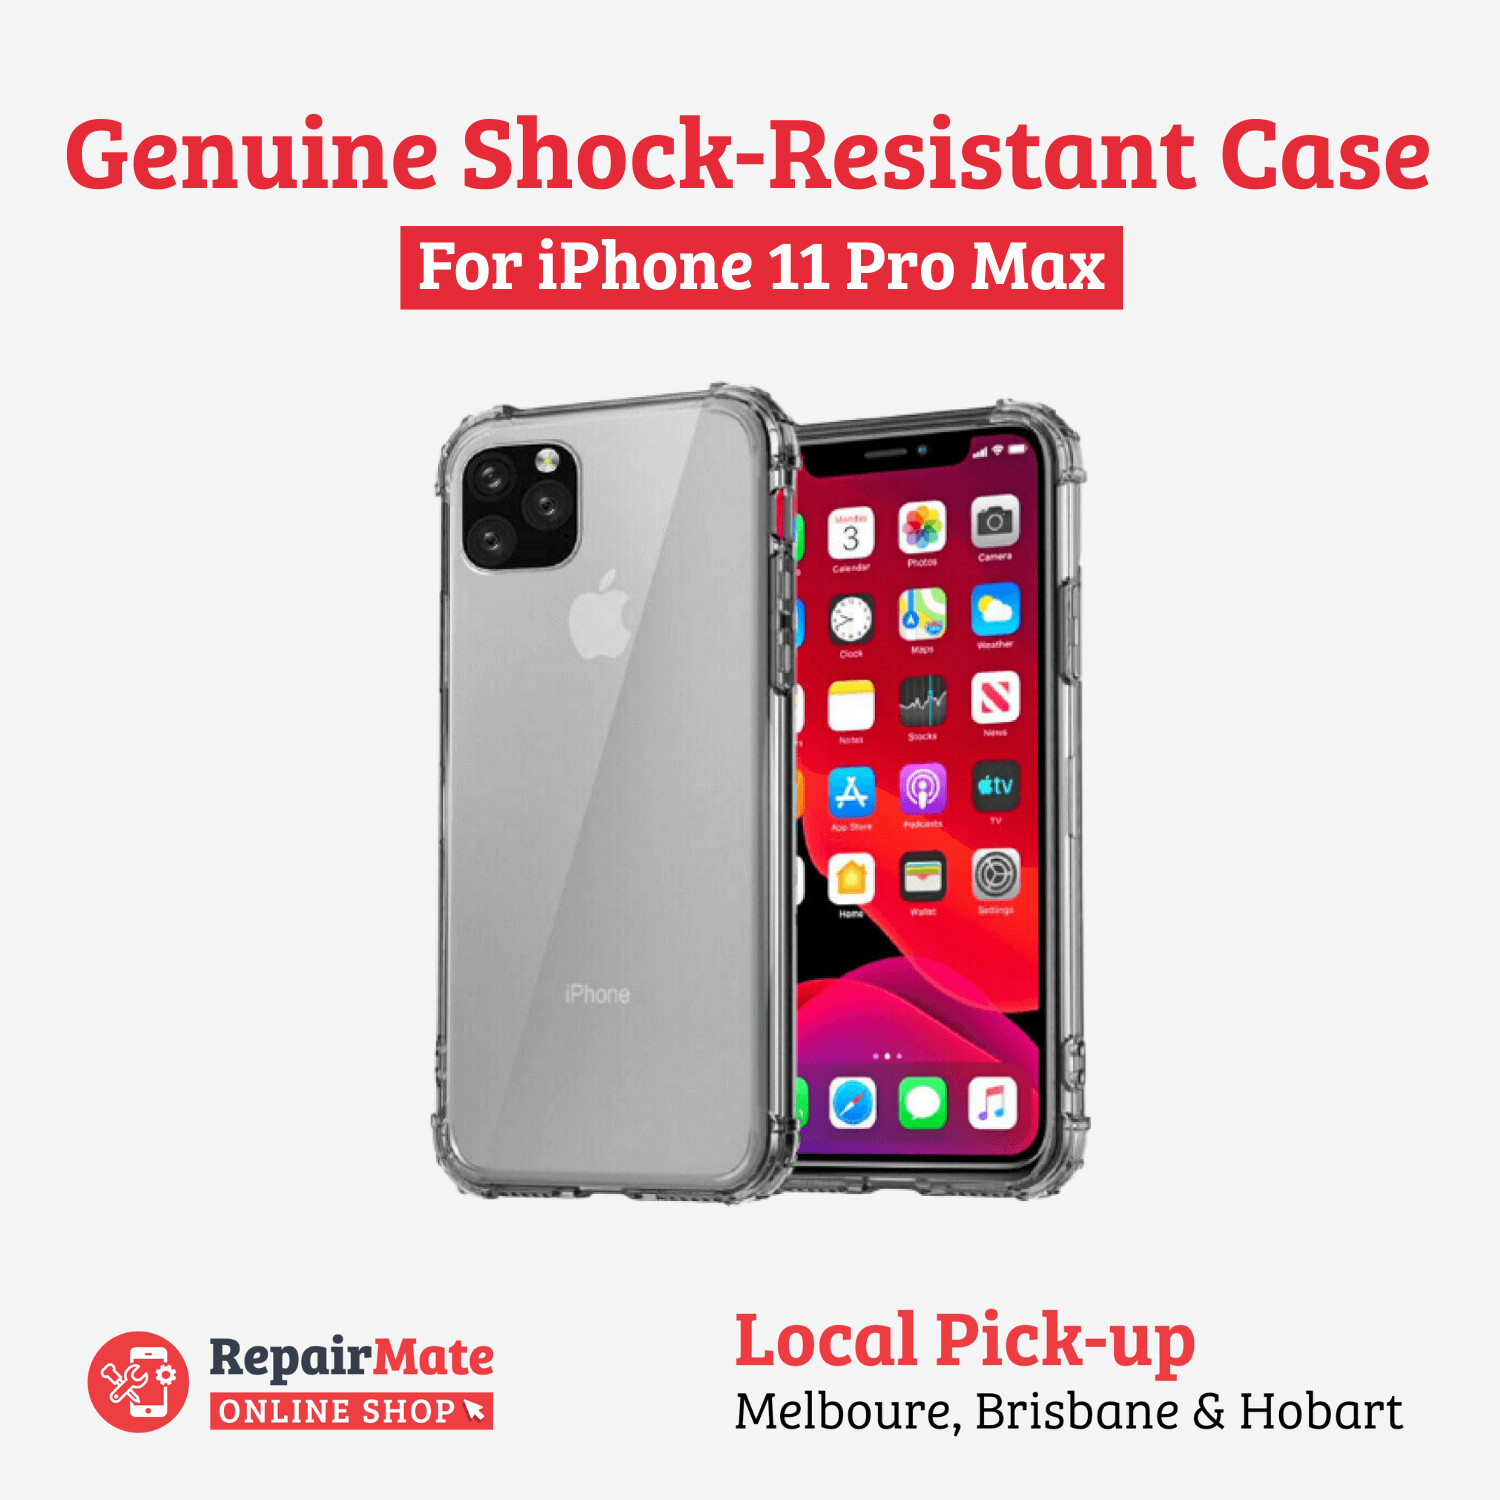 iPhone 11 Pro Max Genuine Shock-Resistant Case